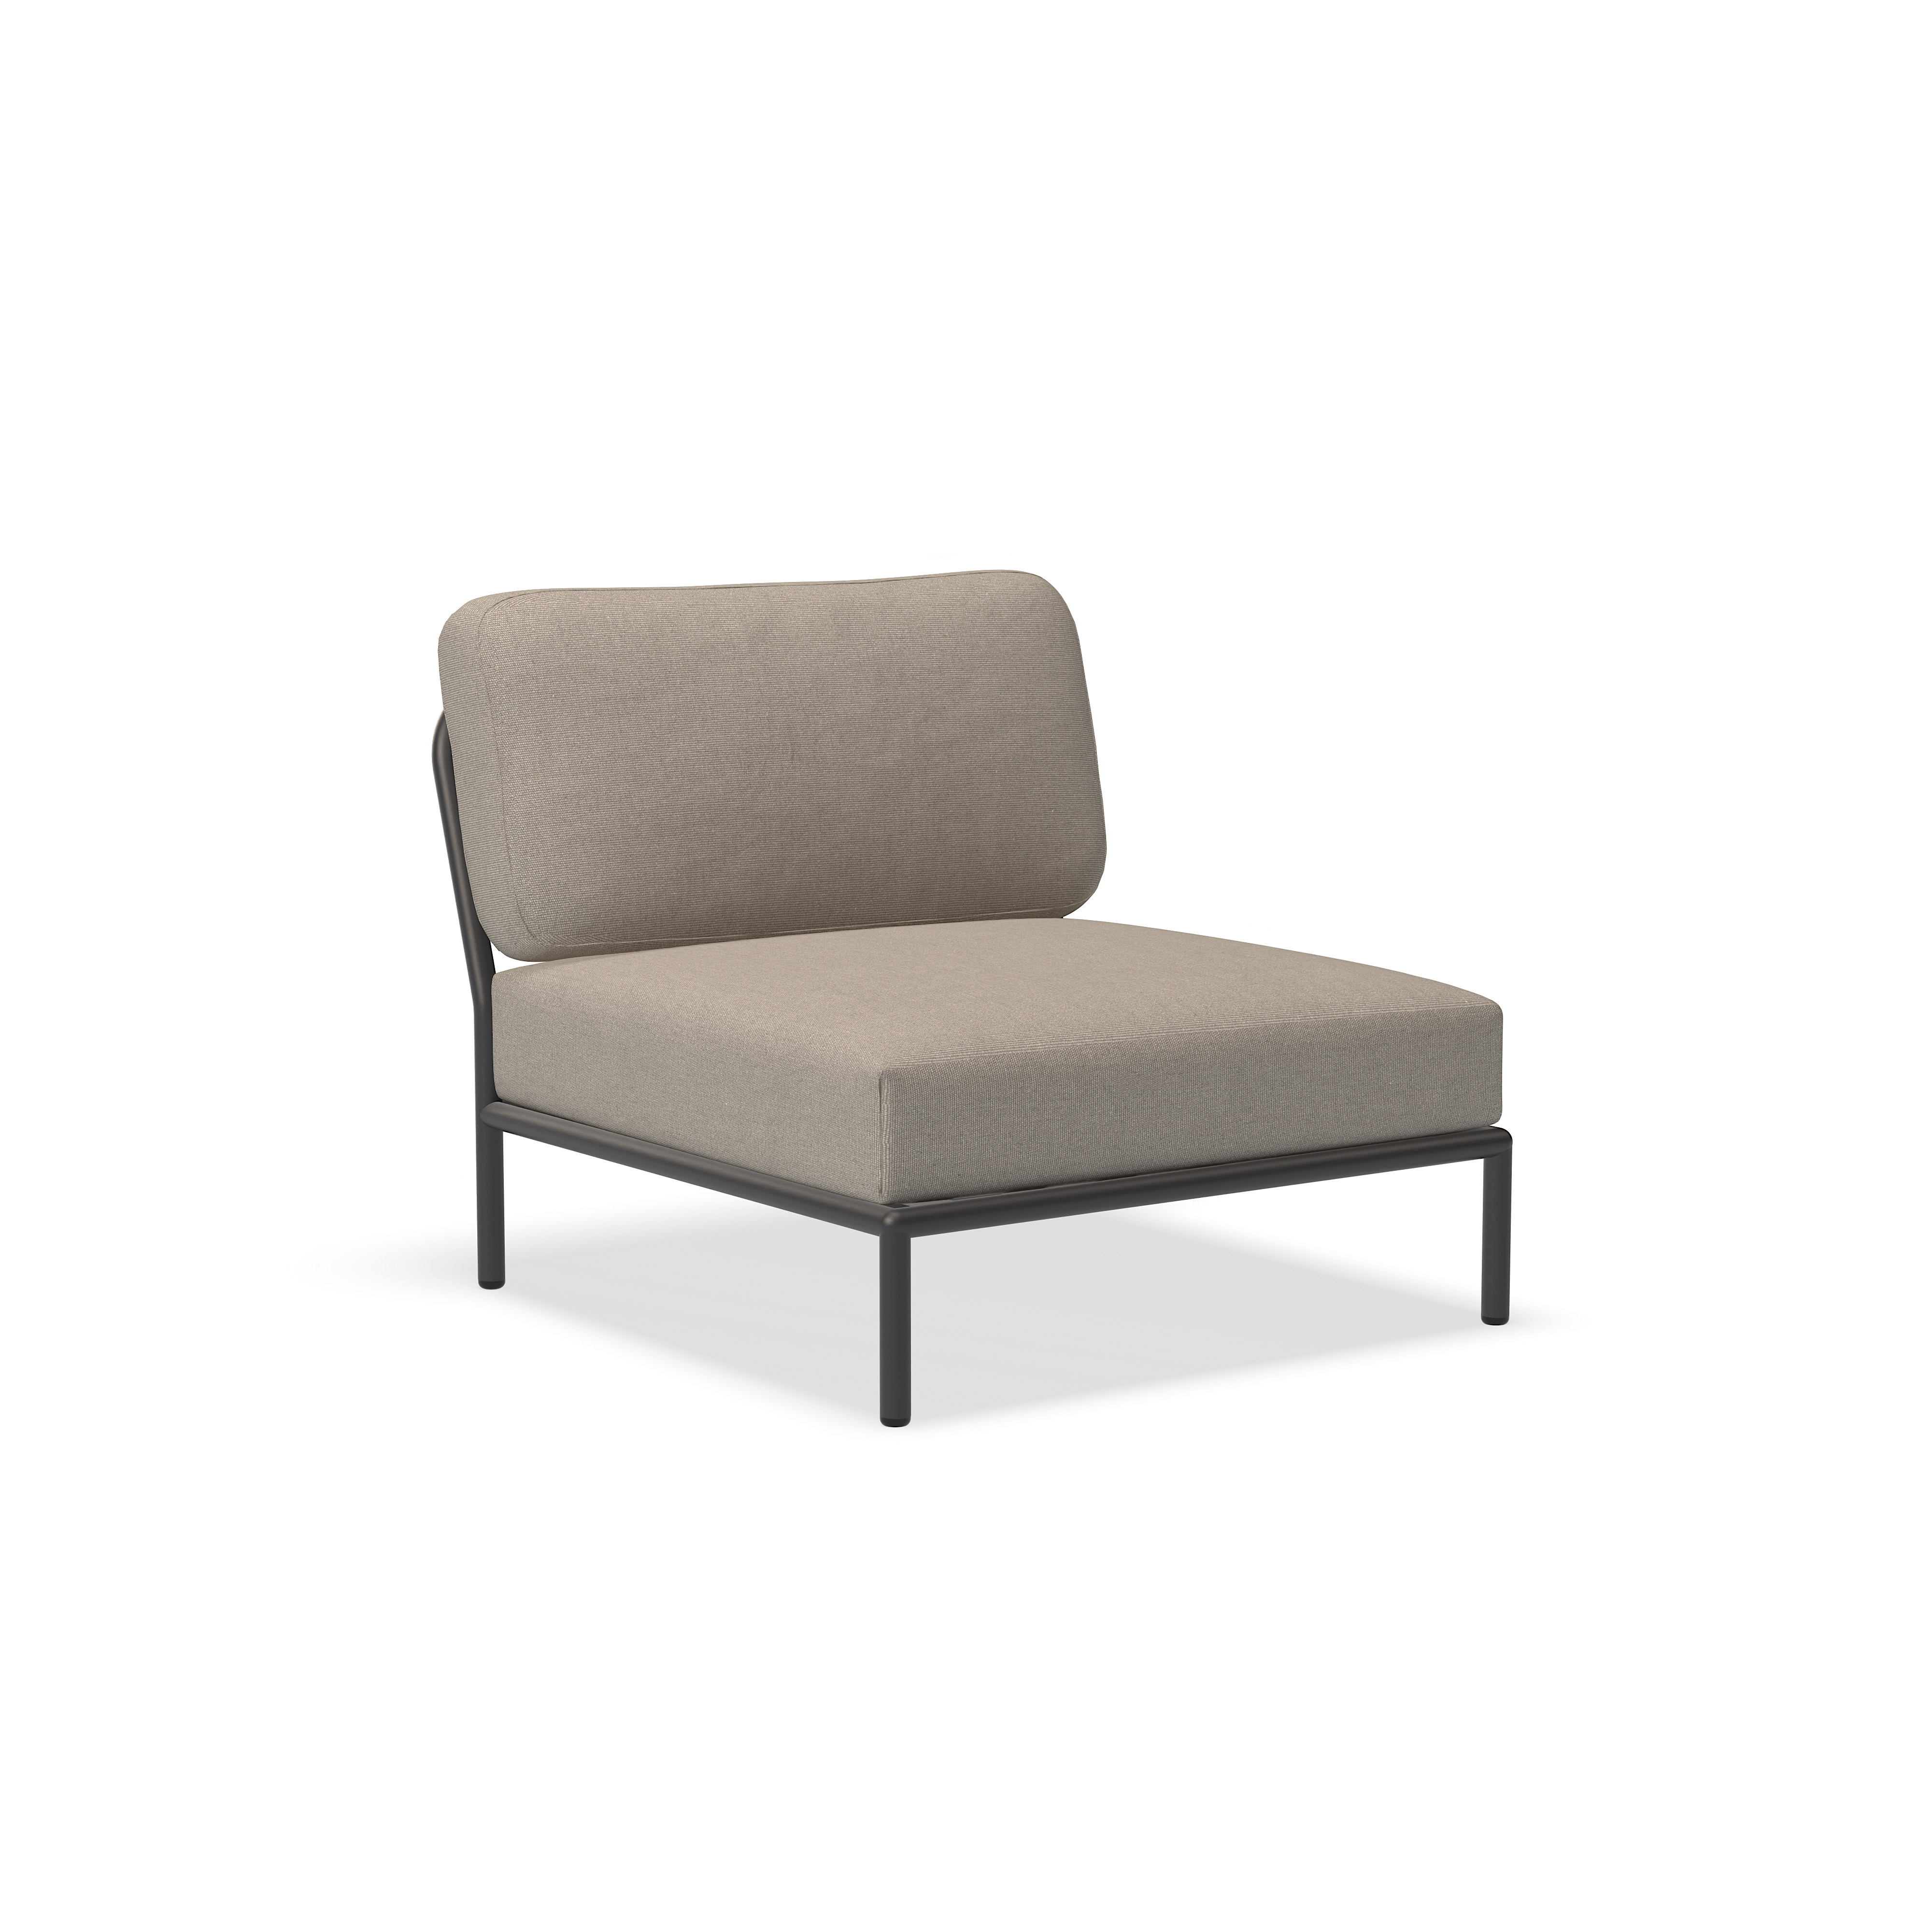 Καρέκλα - 12205-9251 - Καρέκλα, τέφρα (HERITAGE), σκούρα γκρι δομή